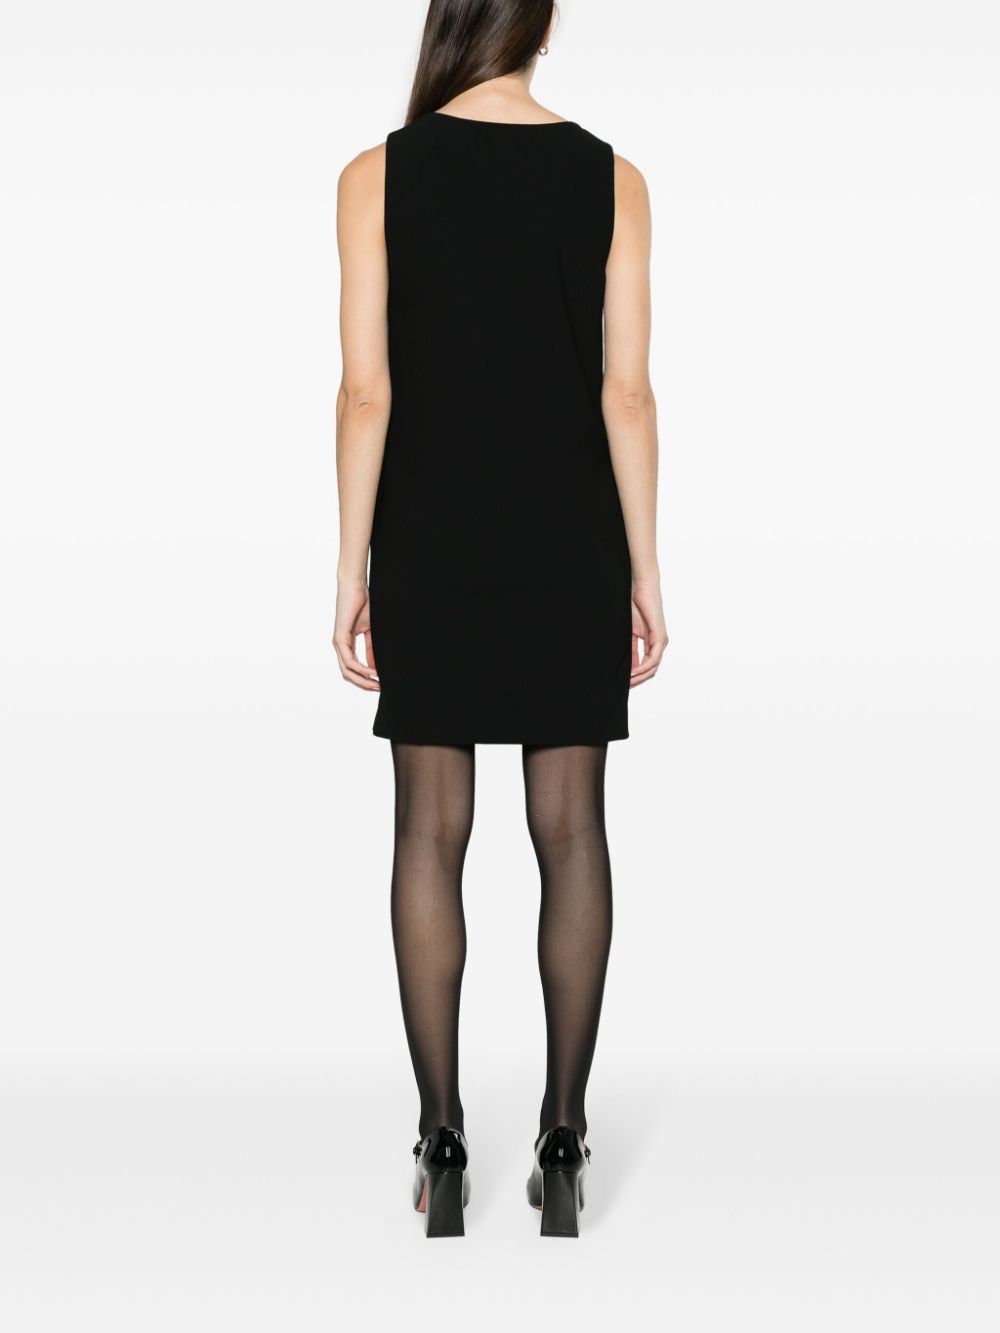 Moschino Mini-jurk met print Zwart